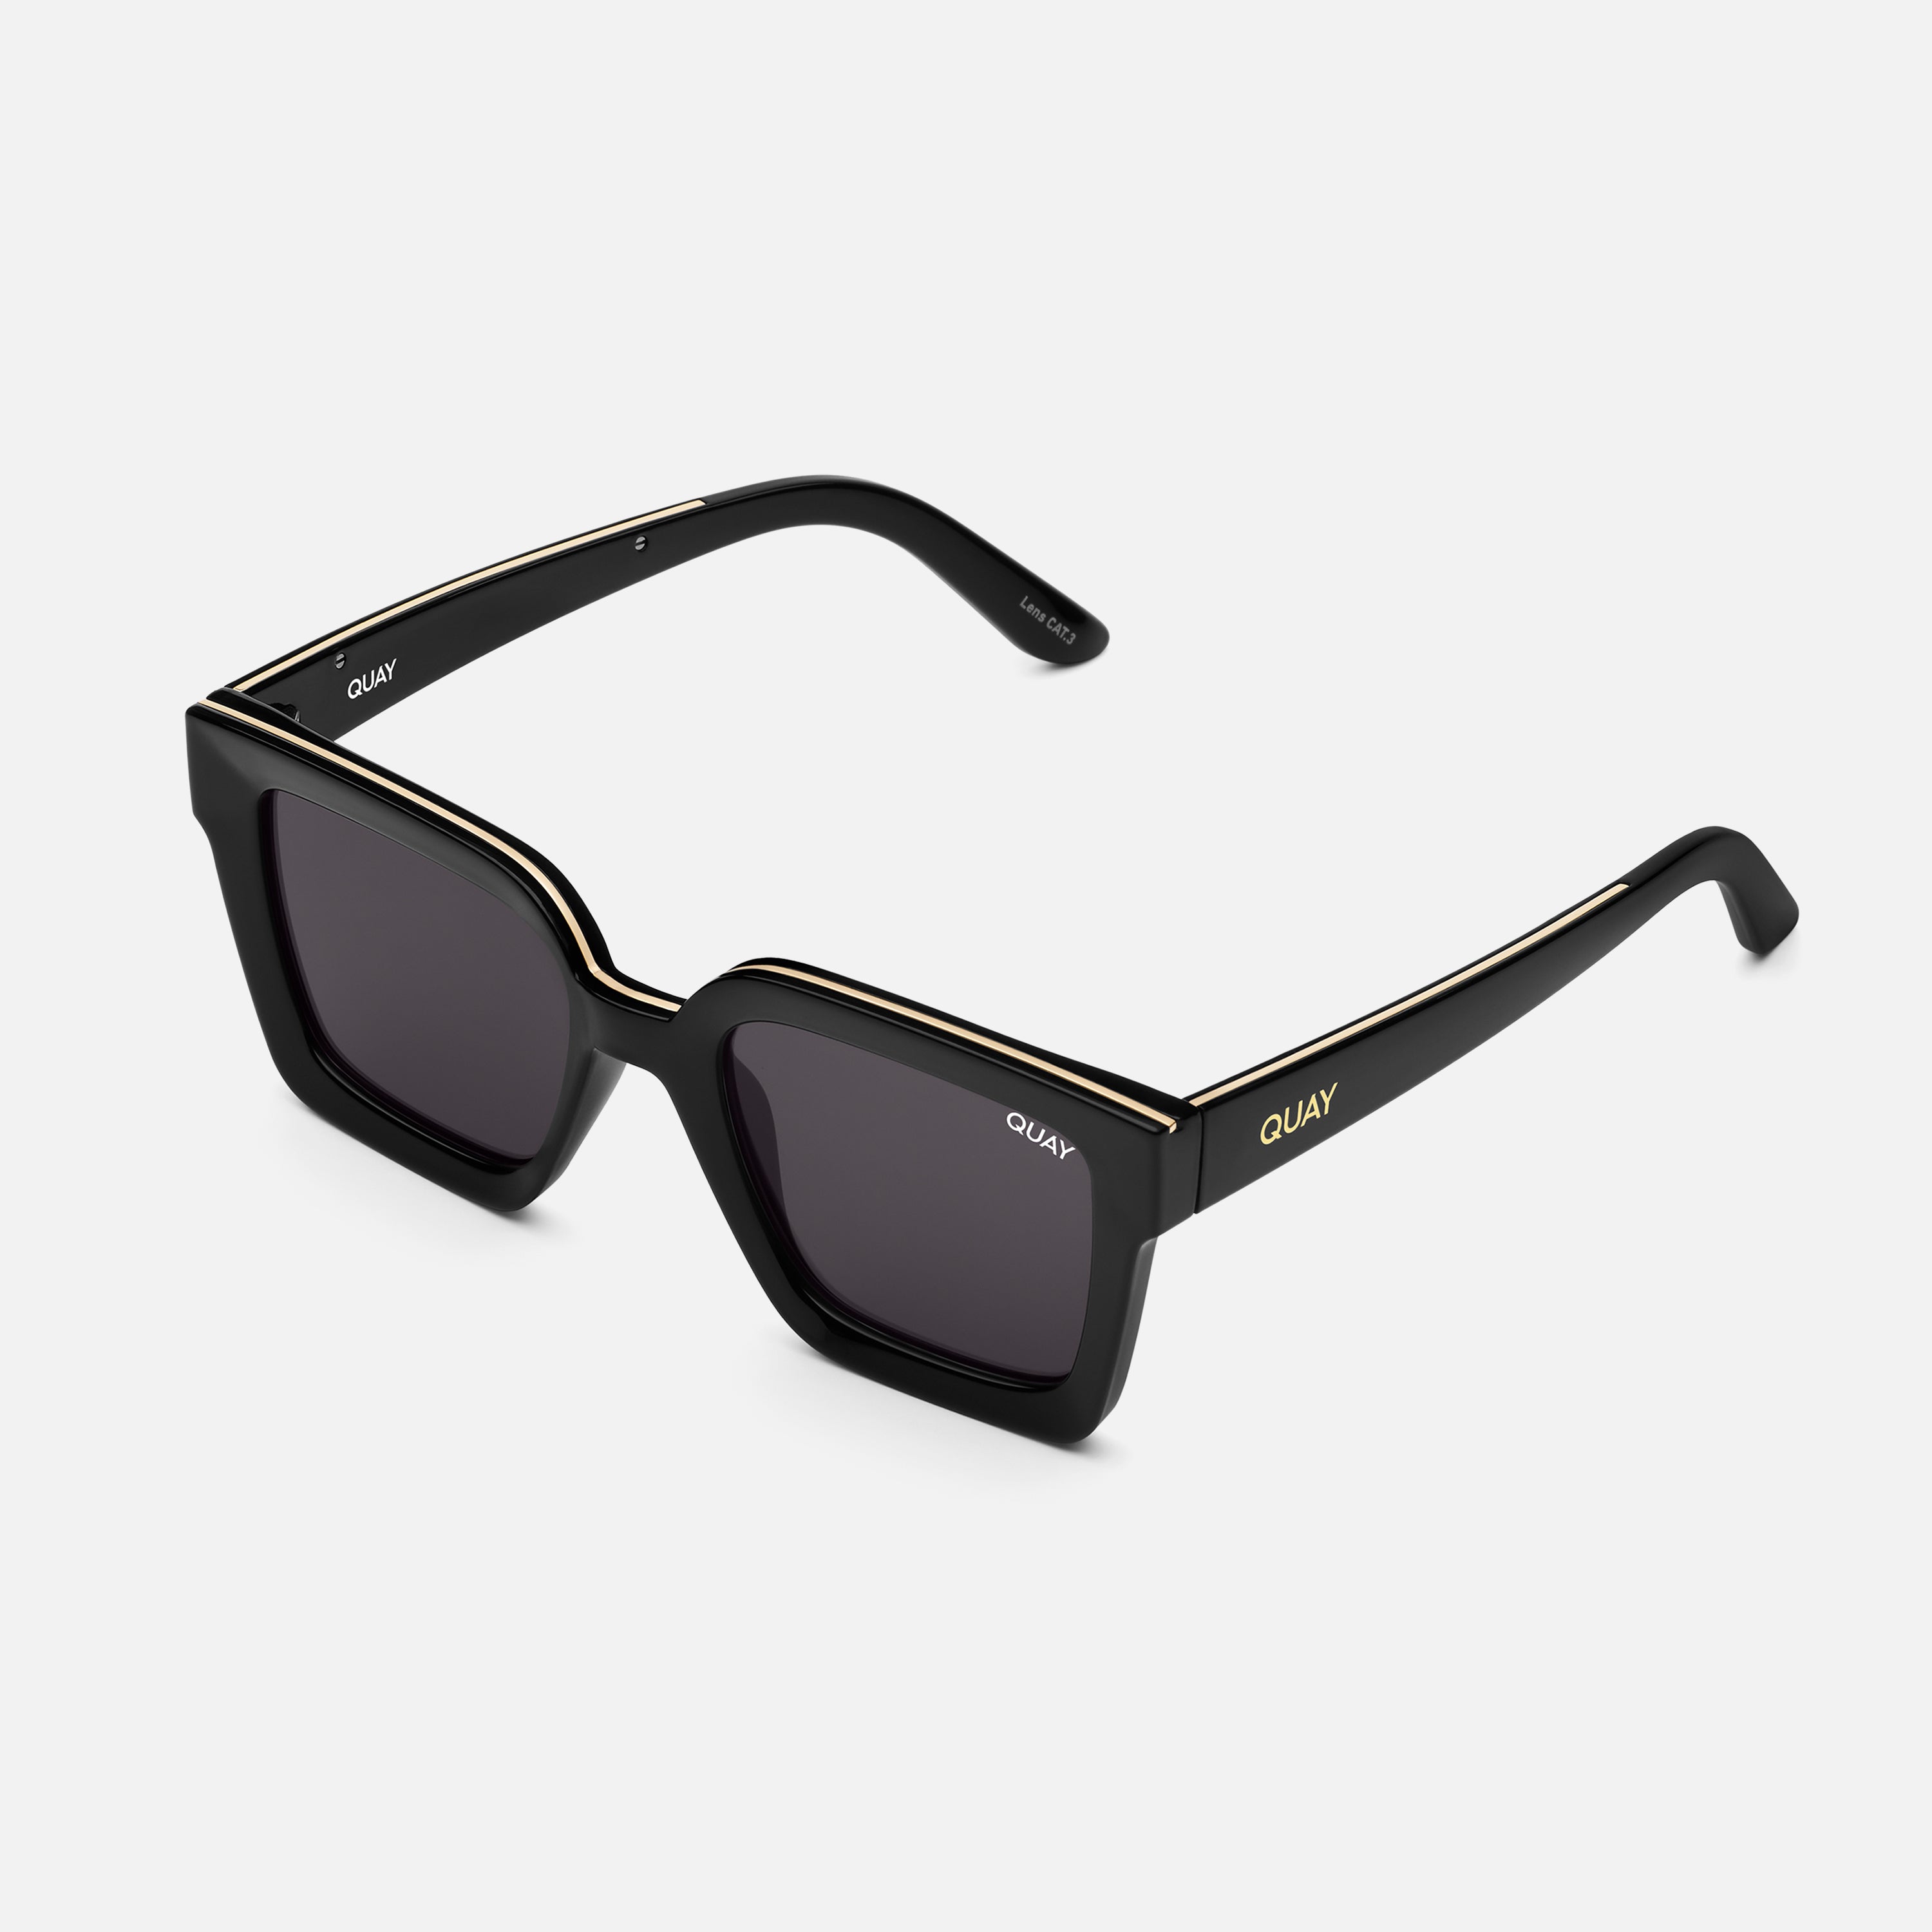 FOOL'S GOLD Square Sunglasses in Black & White